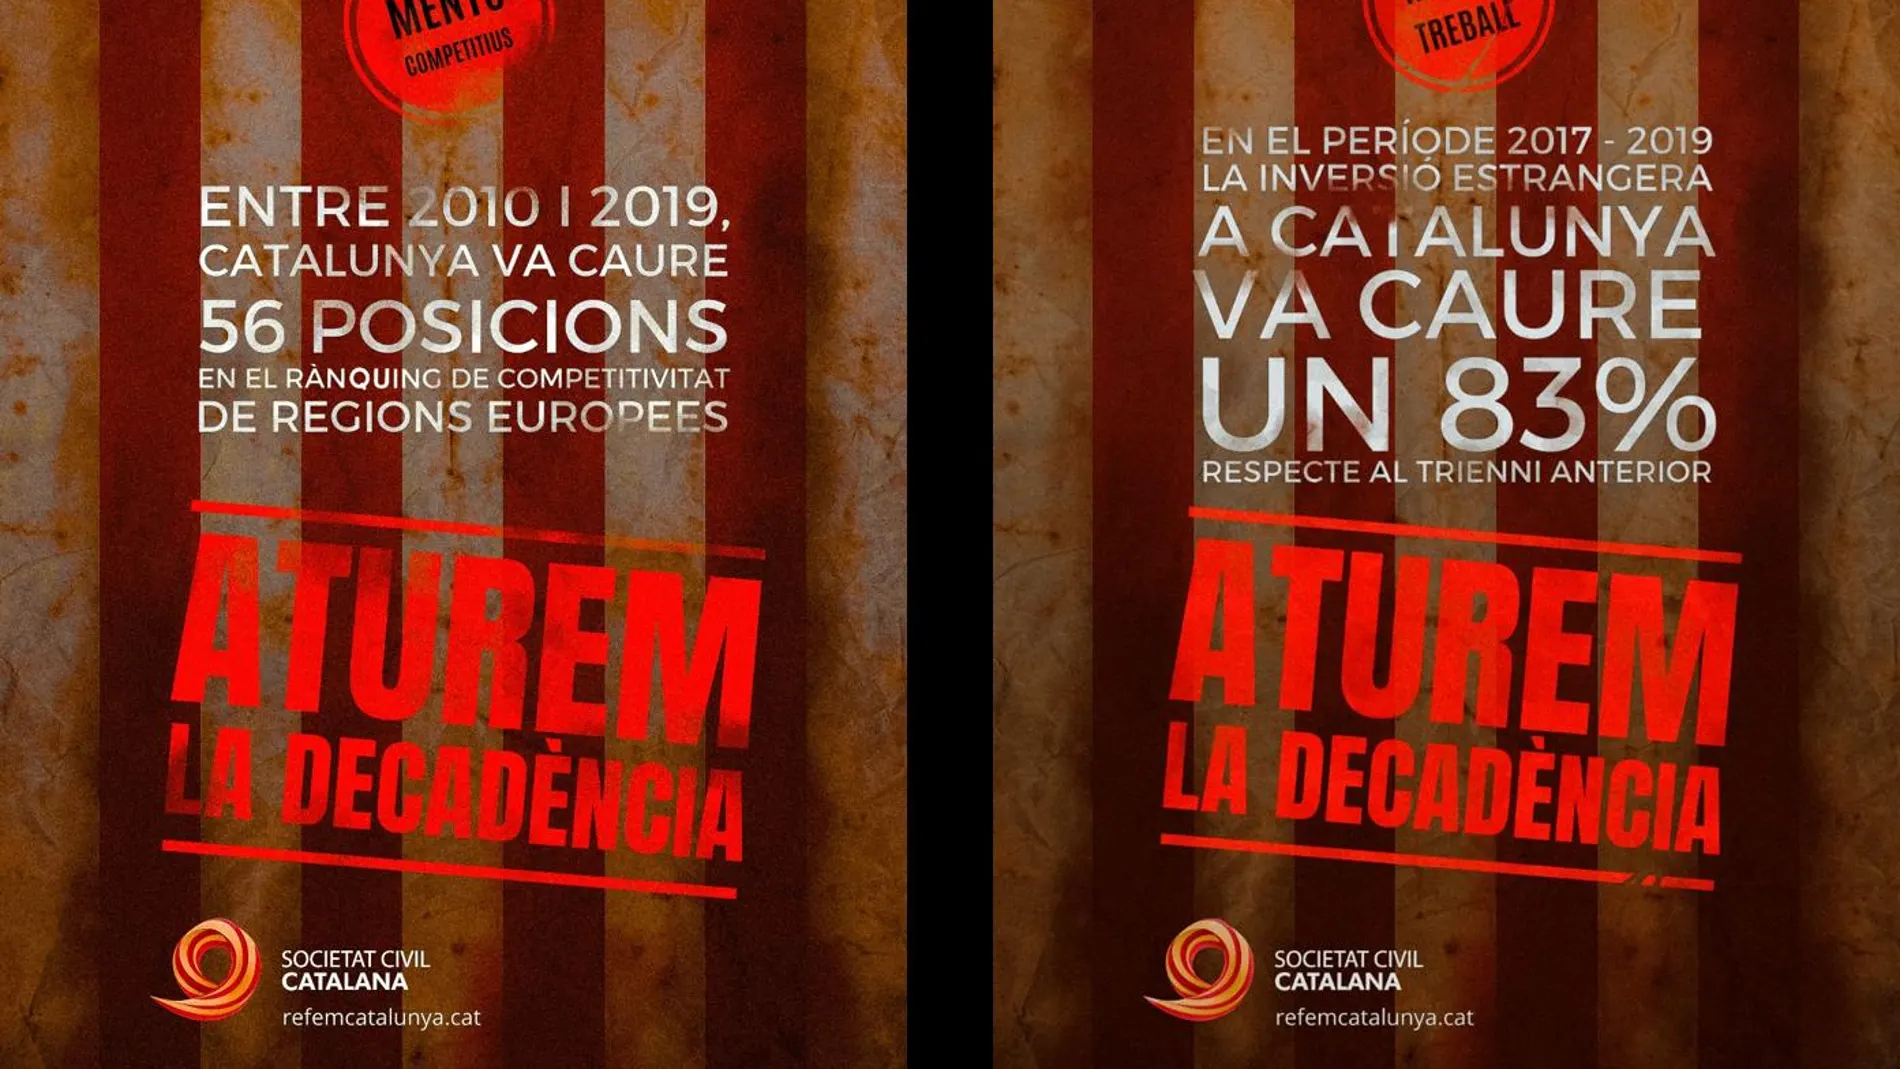 Campaña de Societat Civil Catalana contra las consecuencias económicas del "procés"